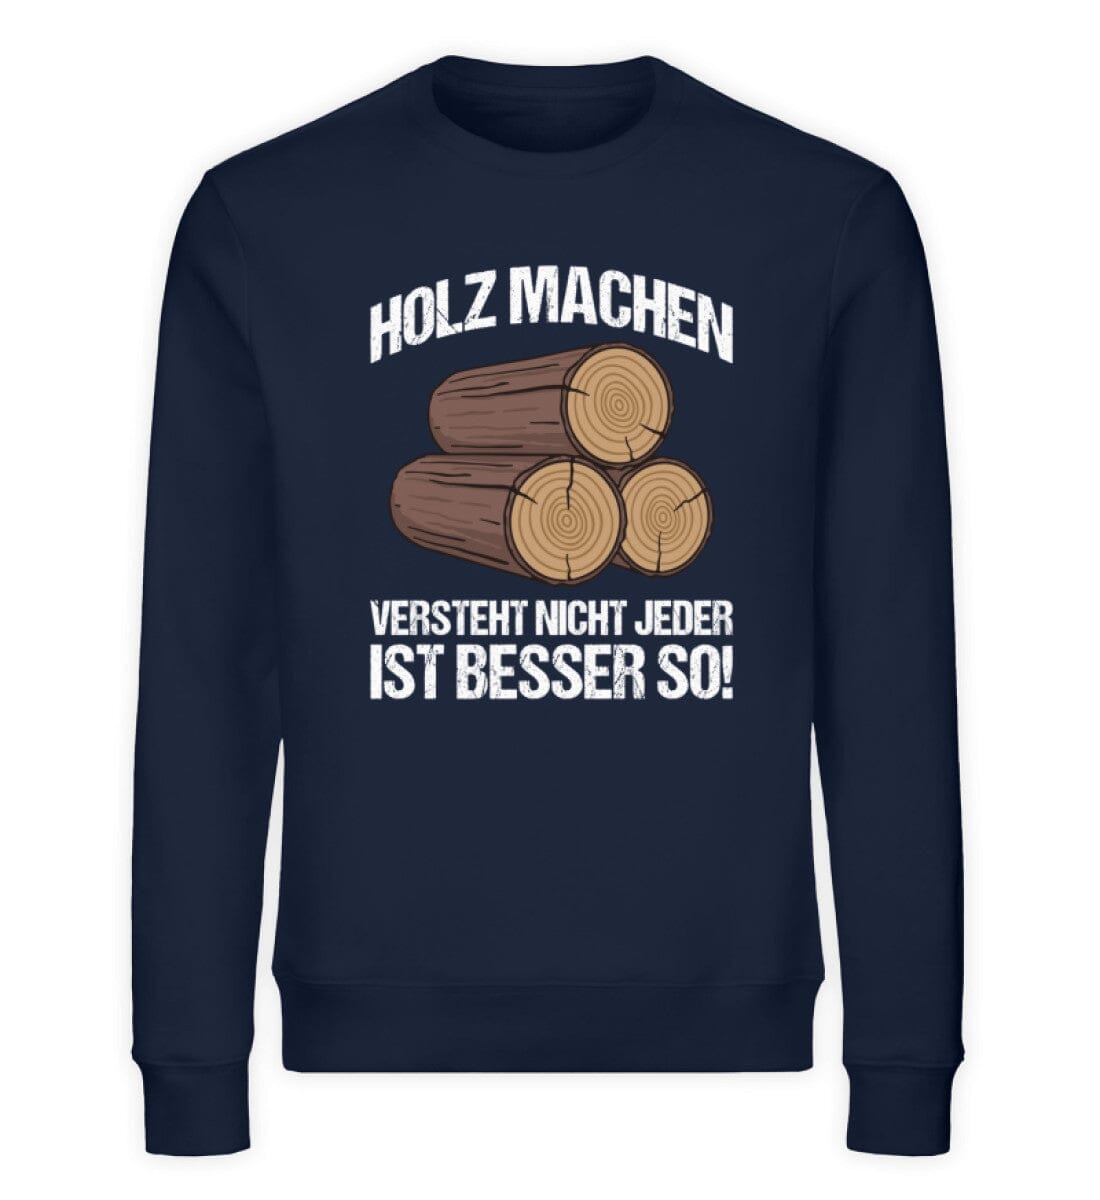 HOLZ MACHEN VERSTEHT NICHT JEDER - Unisex Bio Sweatshirt French Navy XS 